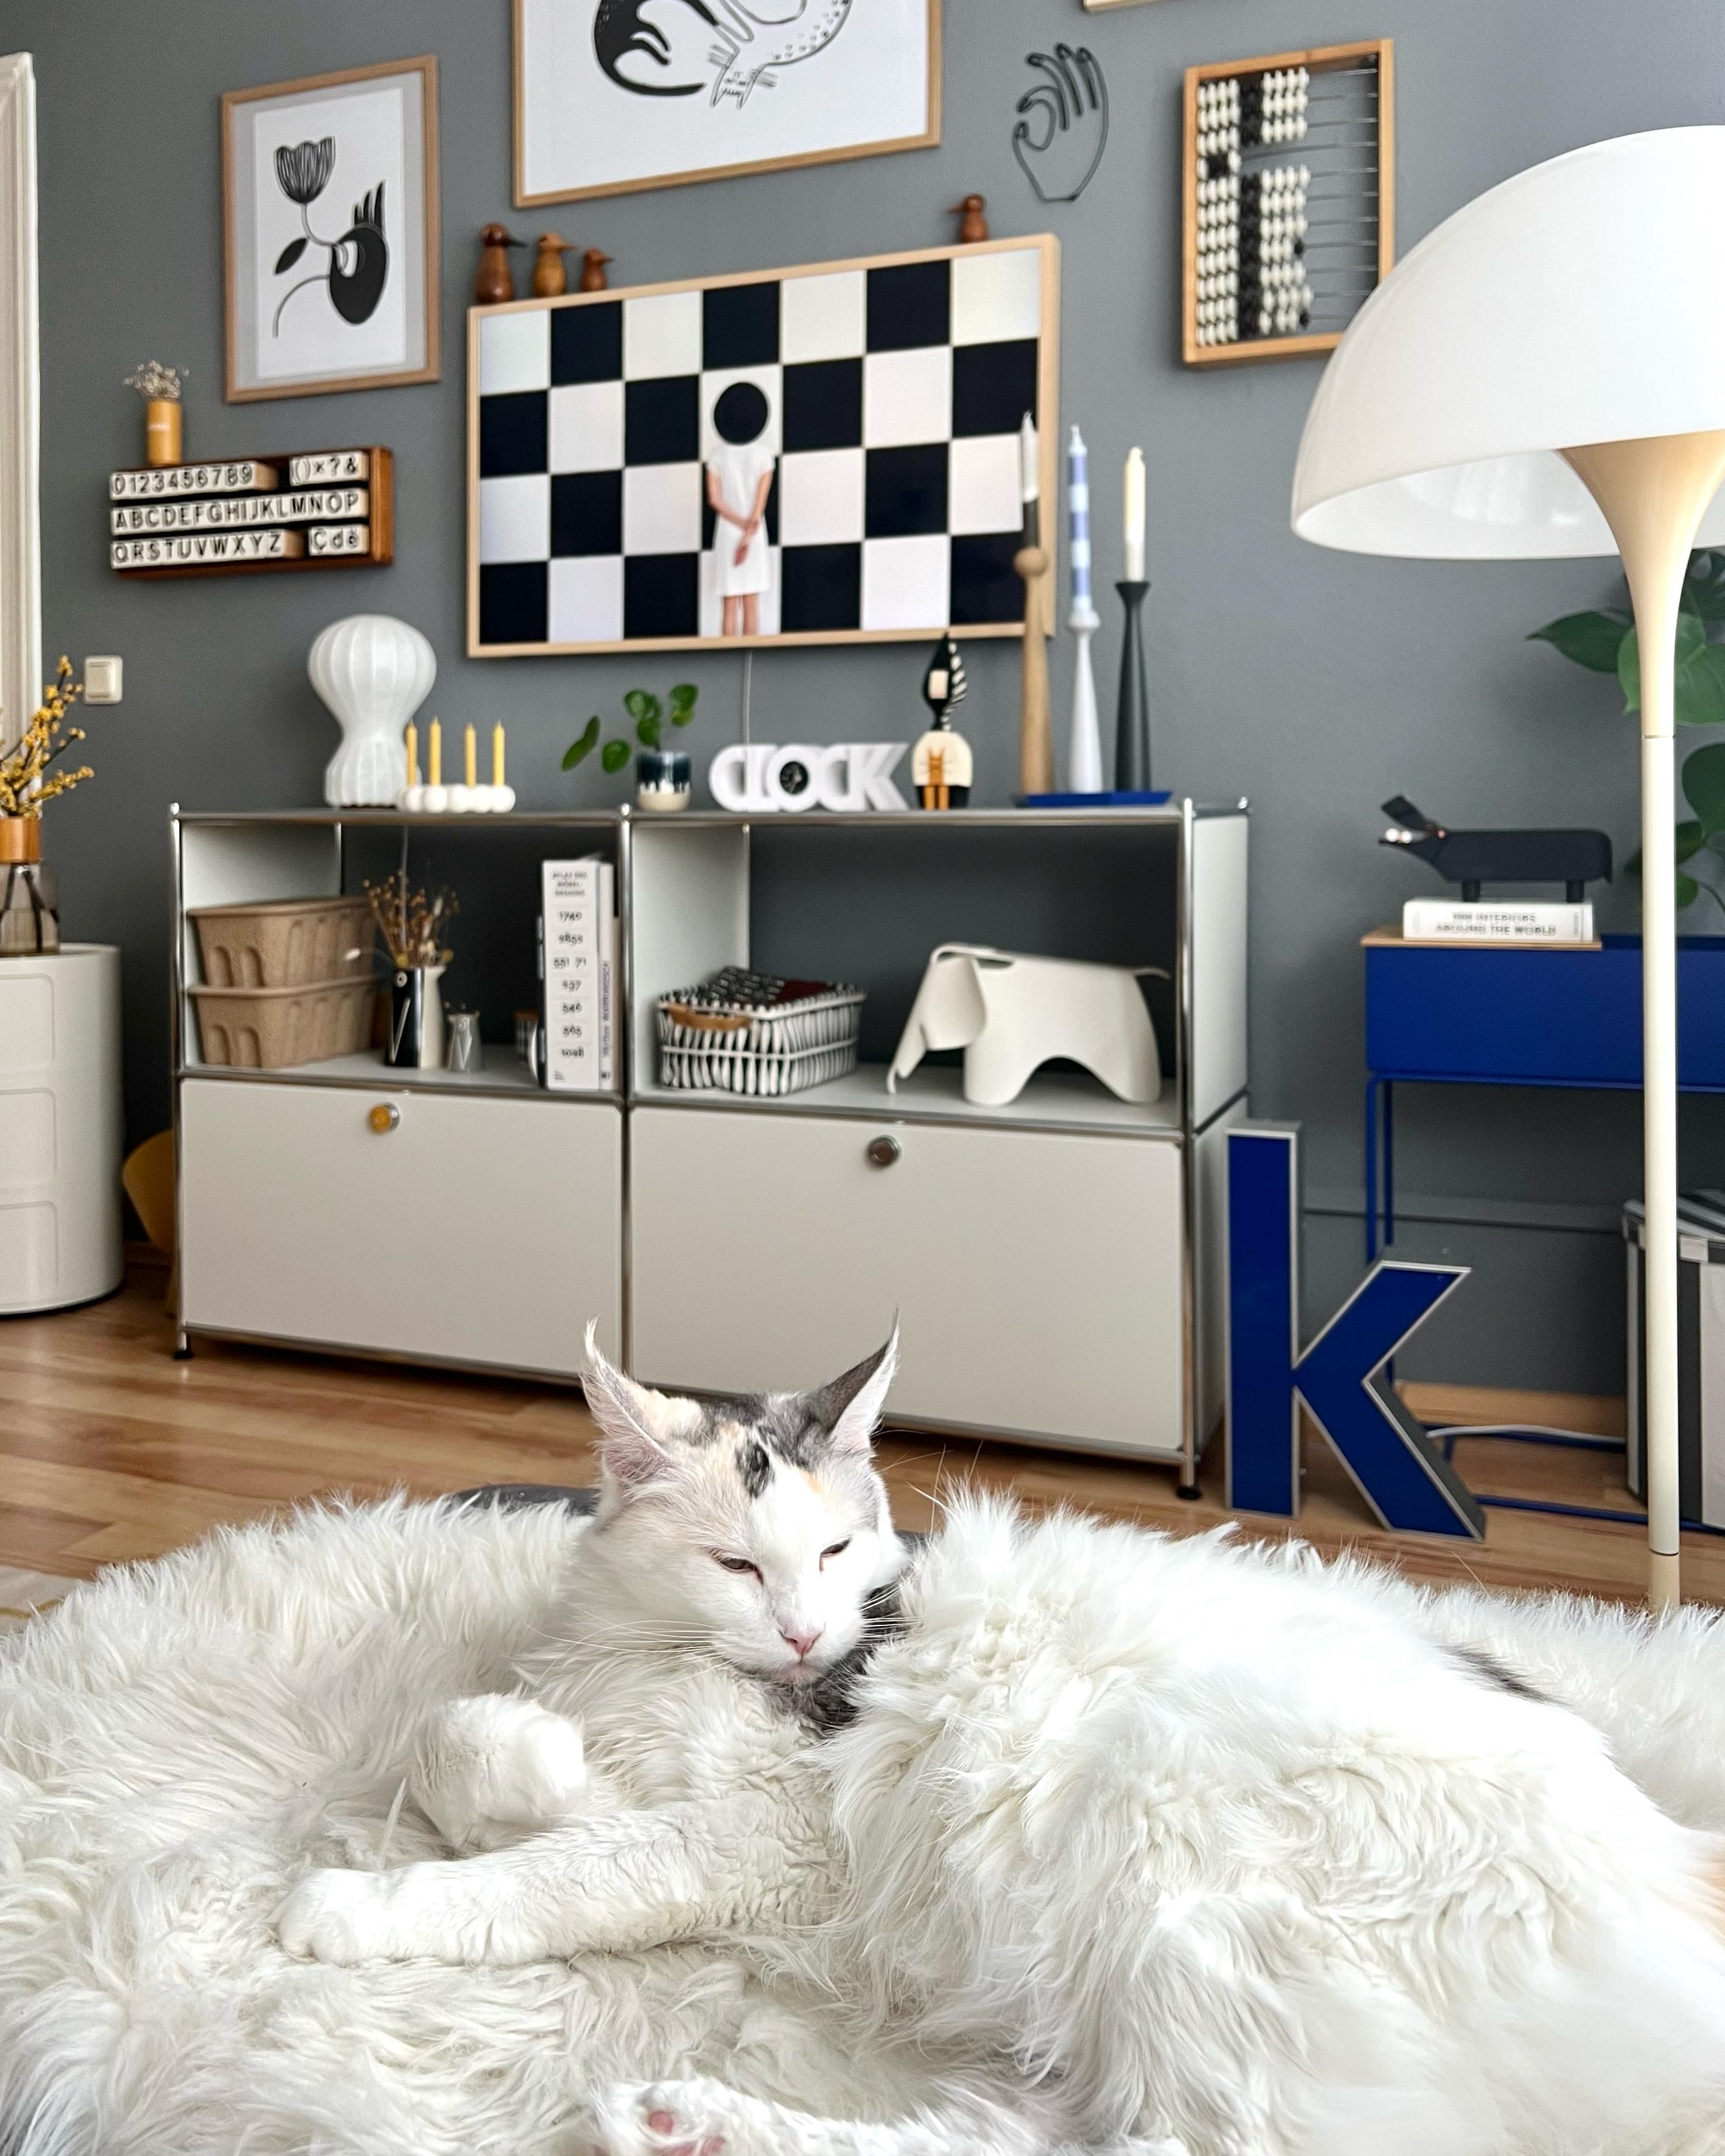 #couchliebt #interior #interiordesign #interiorinspo #gallerywall #frametv #wohnzimmer #tv #blau #katze